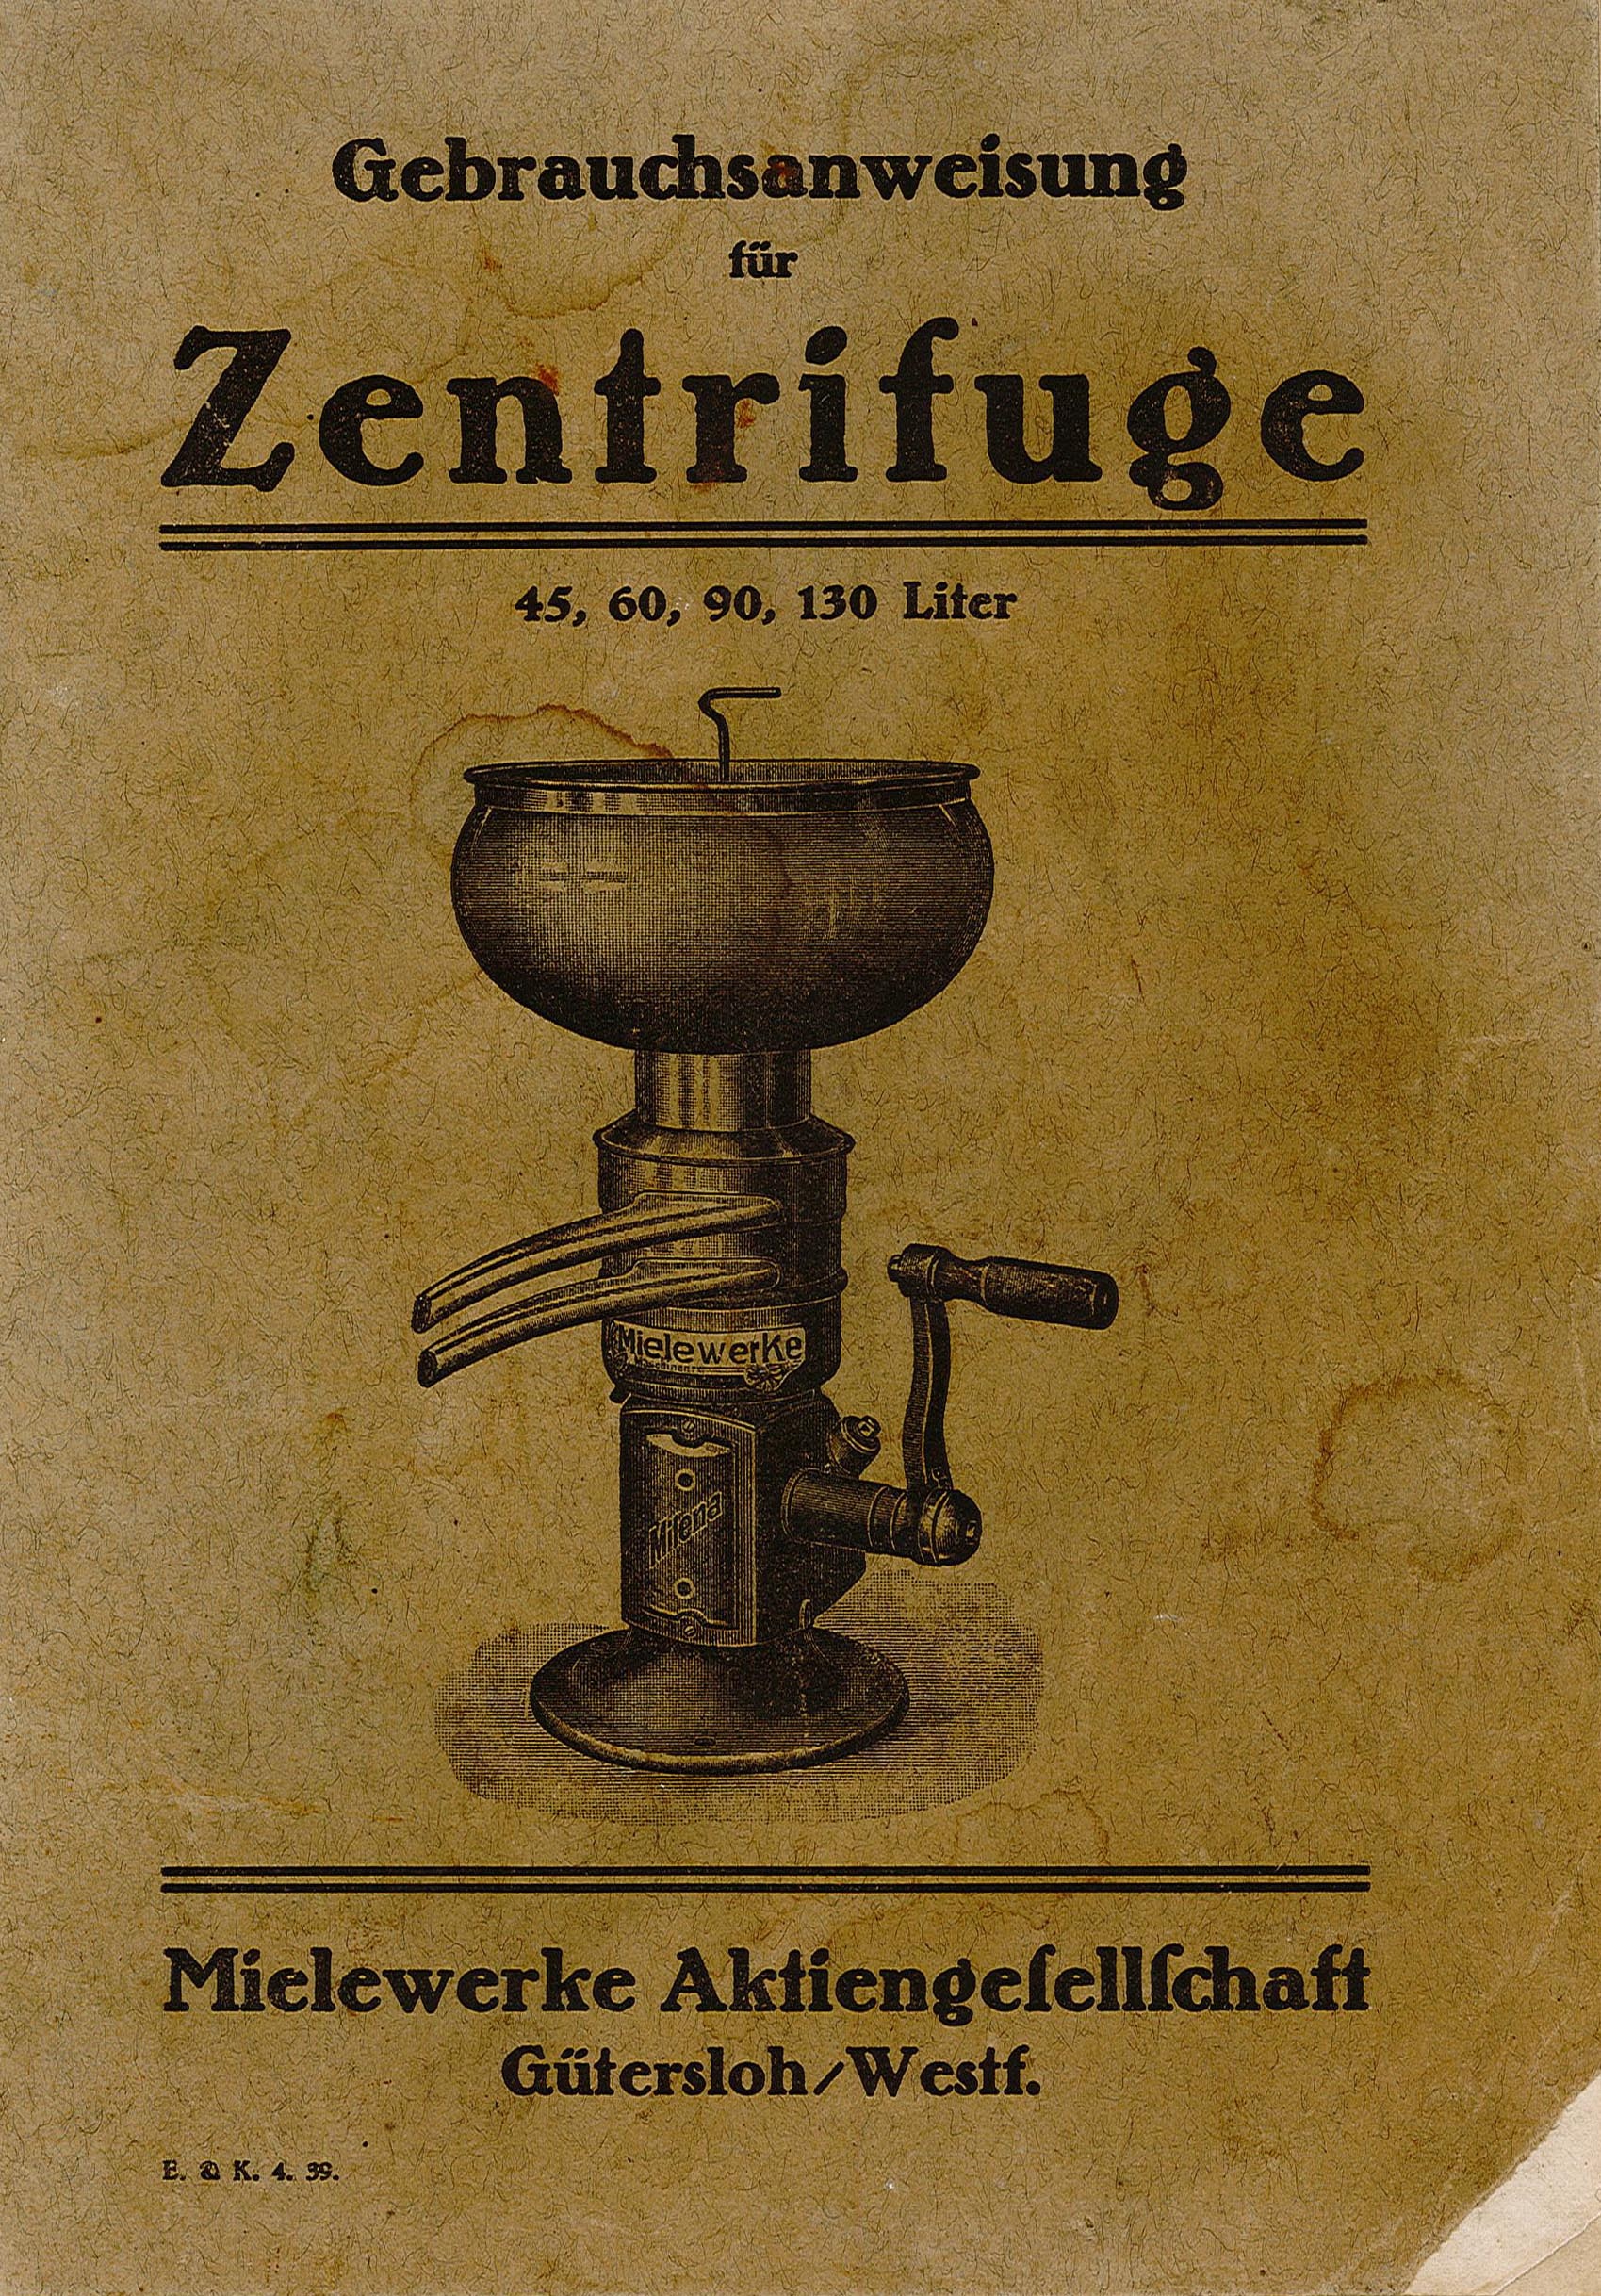 Gebrauchsanweisung für Zentrifuge der Mielewerke (Museum Wolmirstedt RR-F)